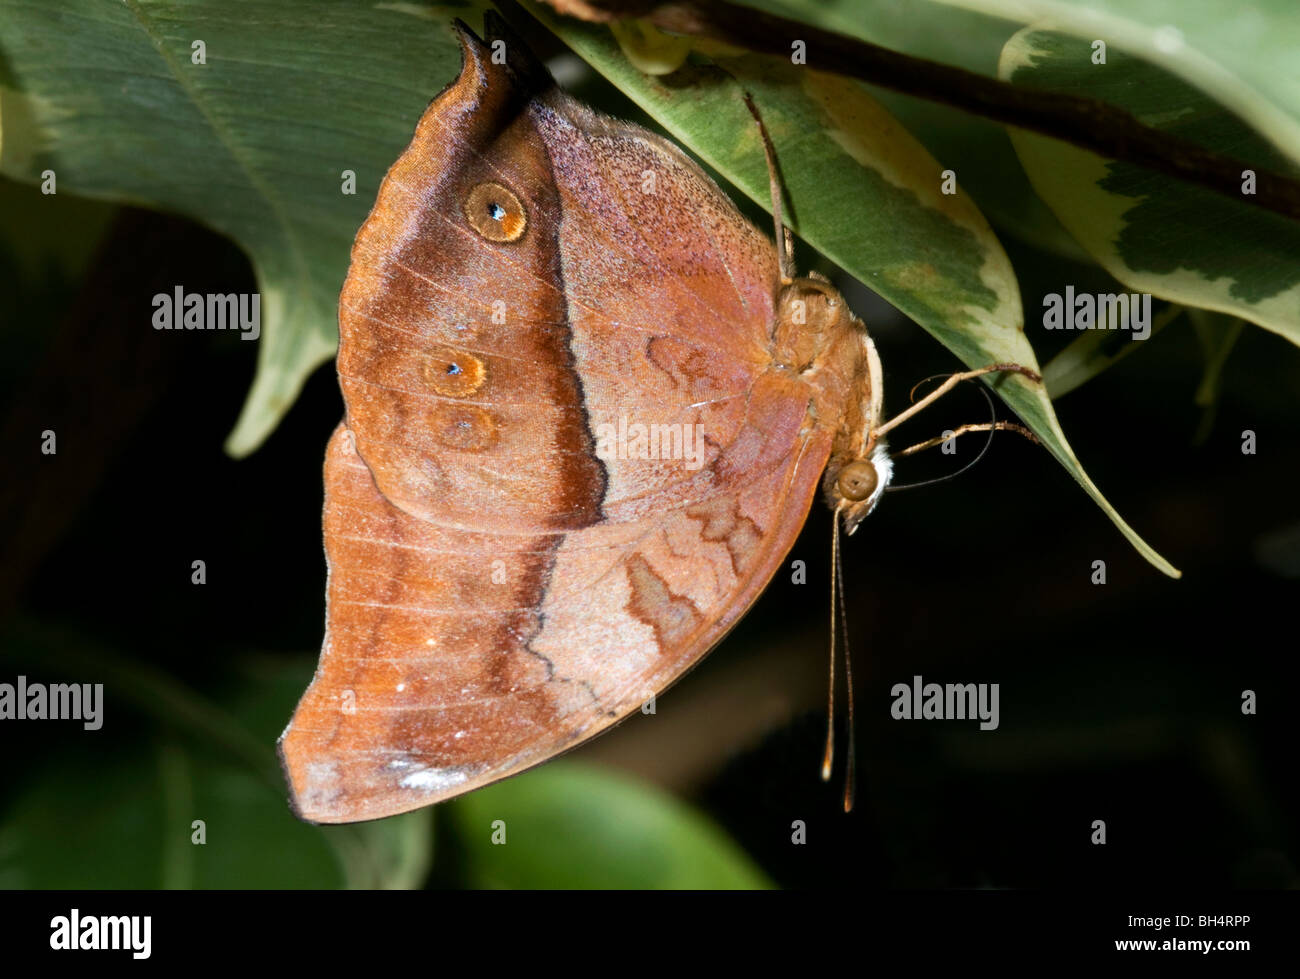 Close-up of a butterfly (Commodore) espèces precis en position de repos typique qui ressemble à une feuille morte. Banque D'Images